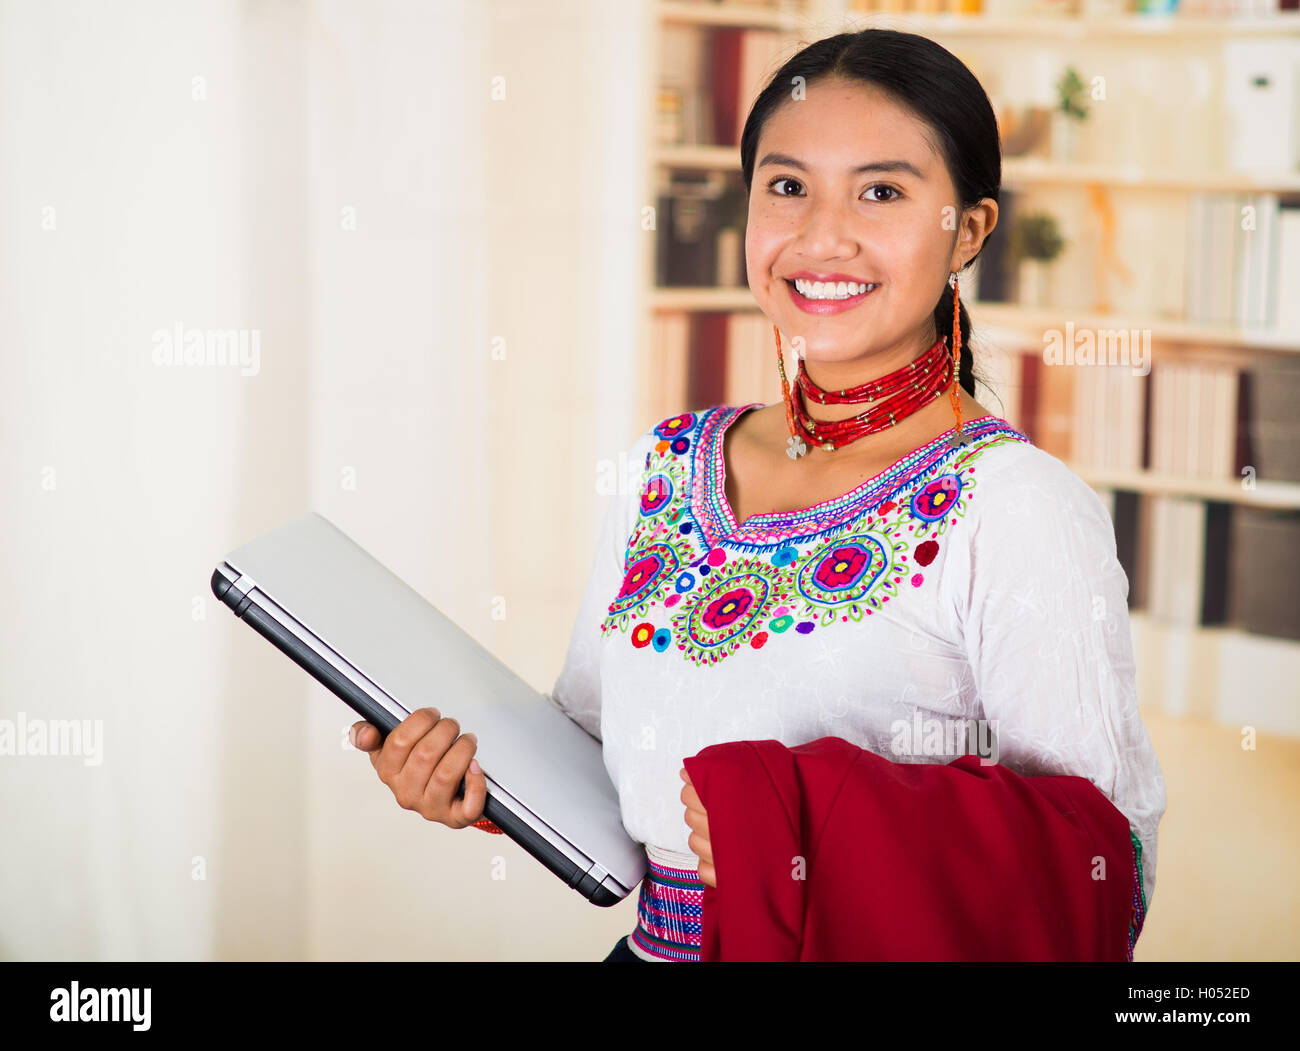 Beau jeune avocat portant blouse traditionnelle des Andes avec collier, holding laptop et red jacket smiling, étagères backg Banque D'Images